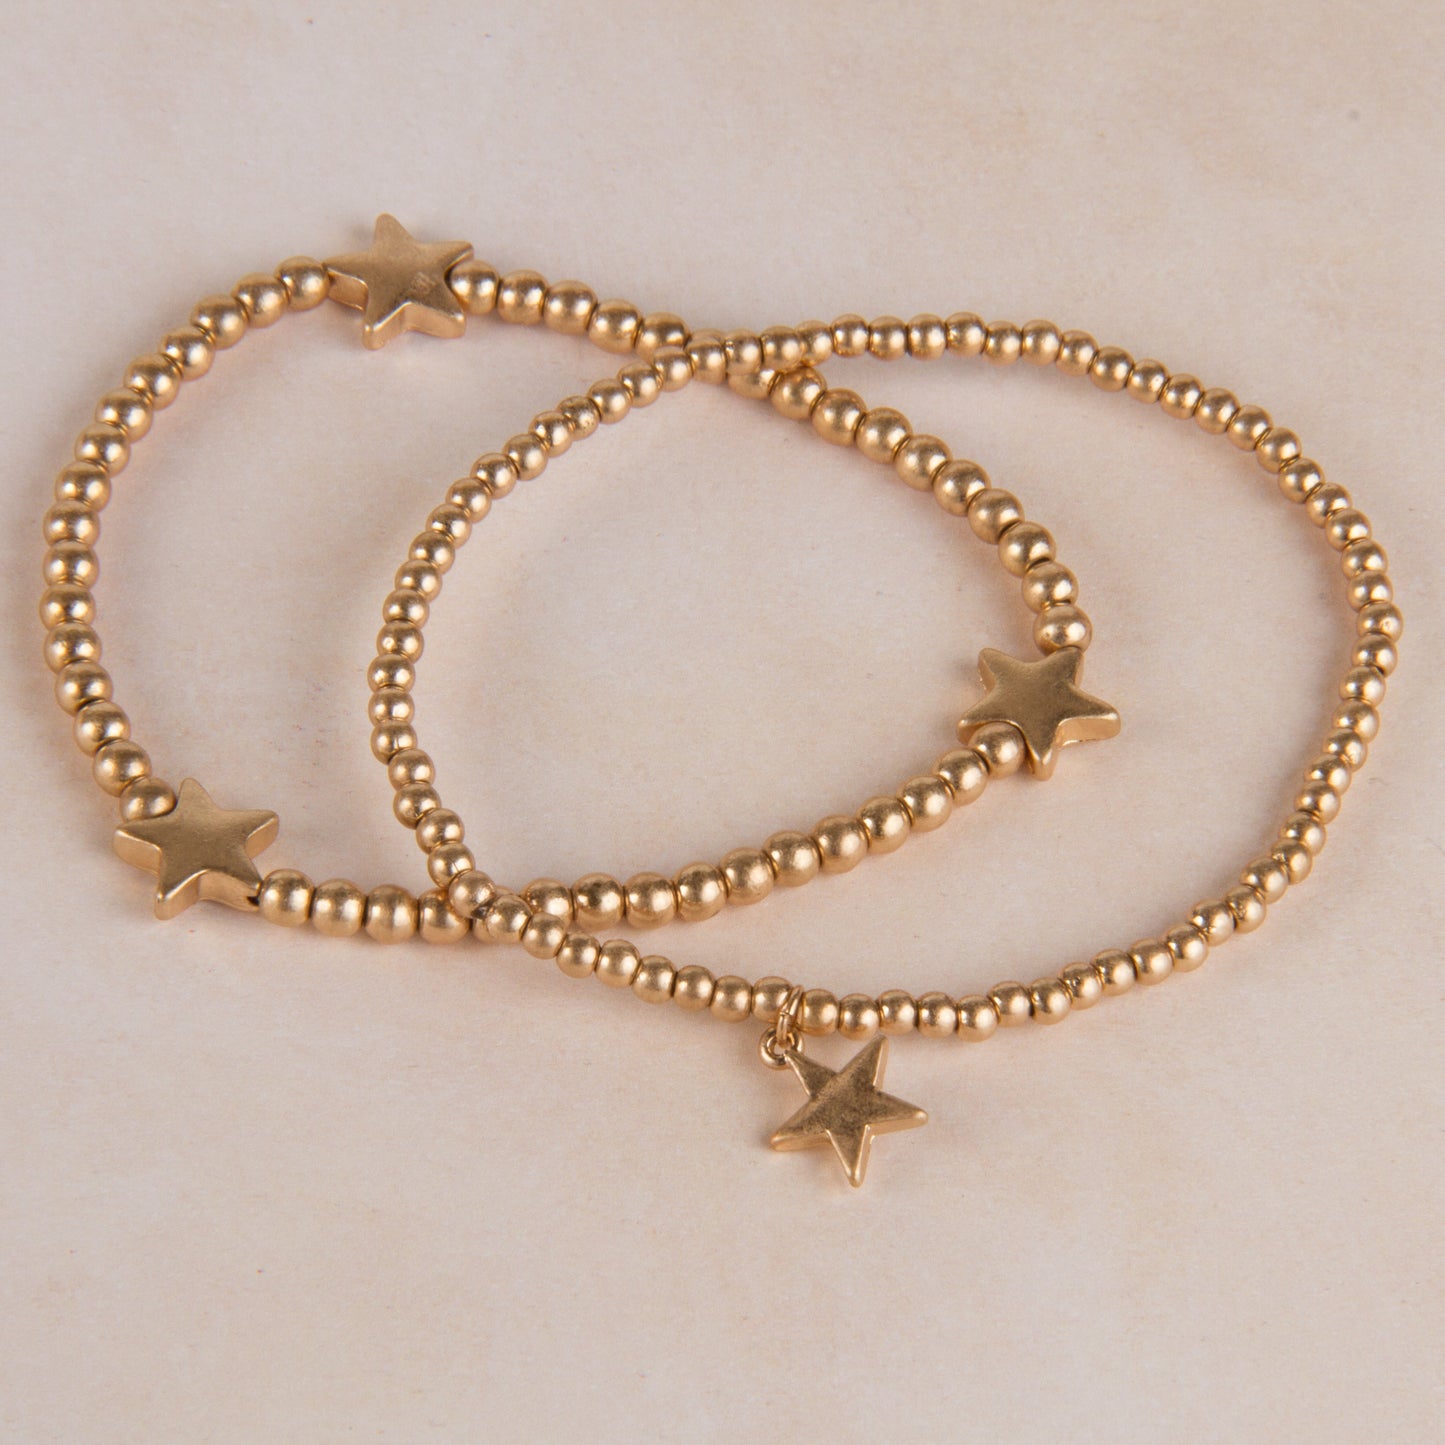 B12131-GD Ball Beads Stretch Bracelet with Star Charm